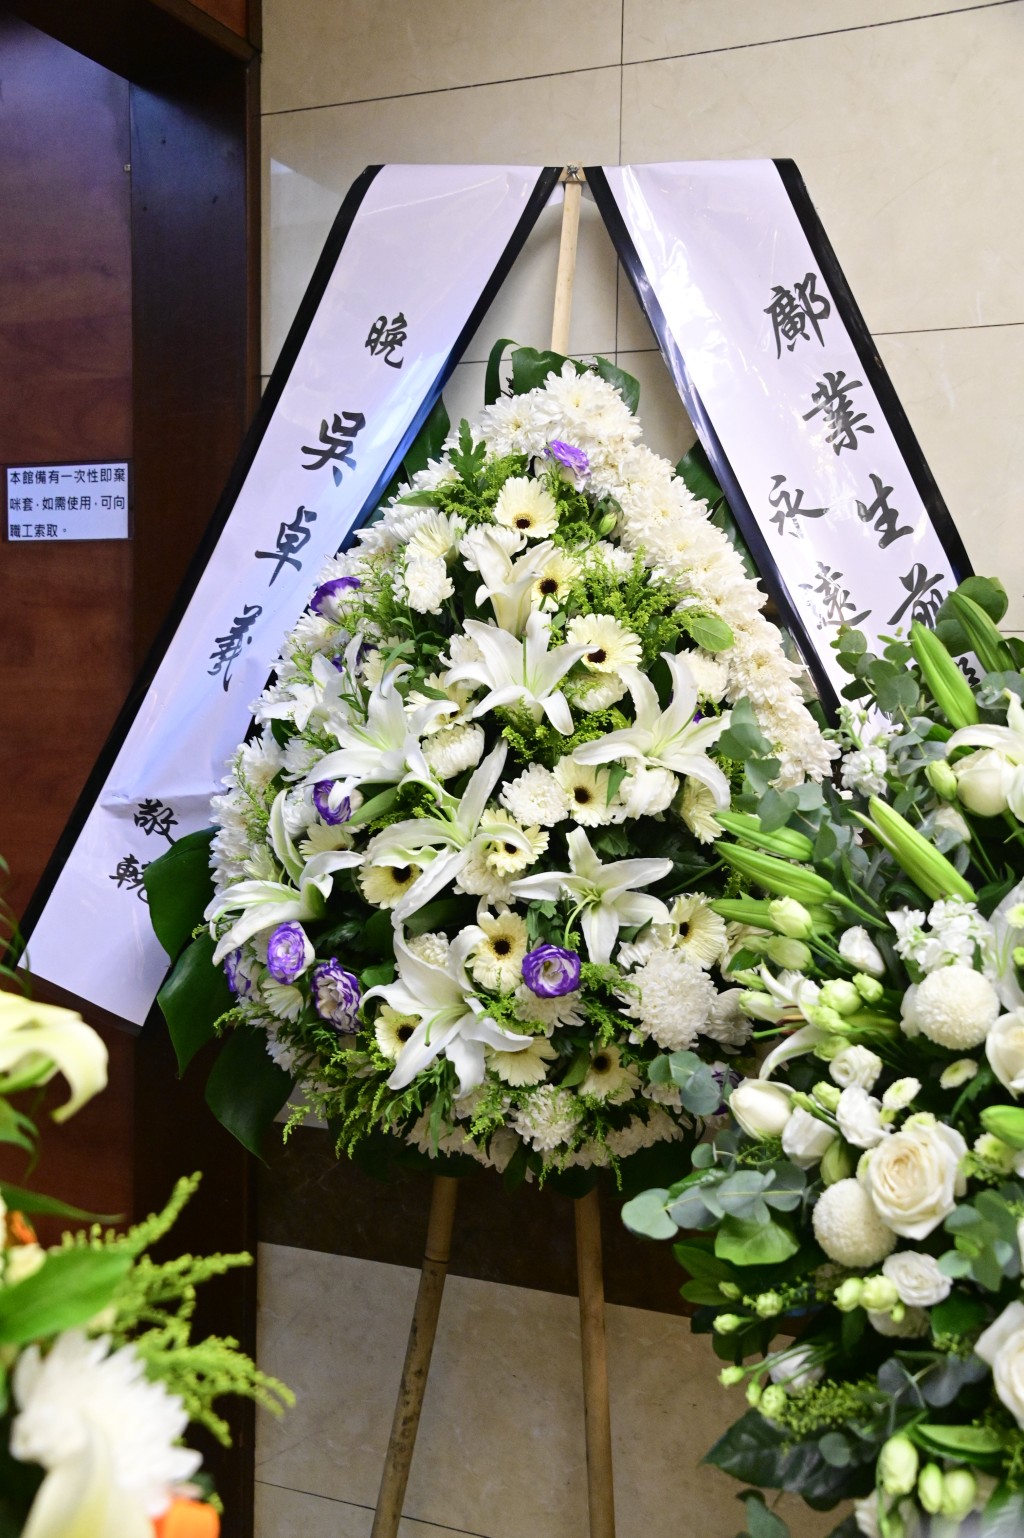 吳卓羲致送花牌悼念。